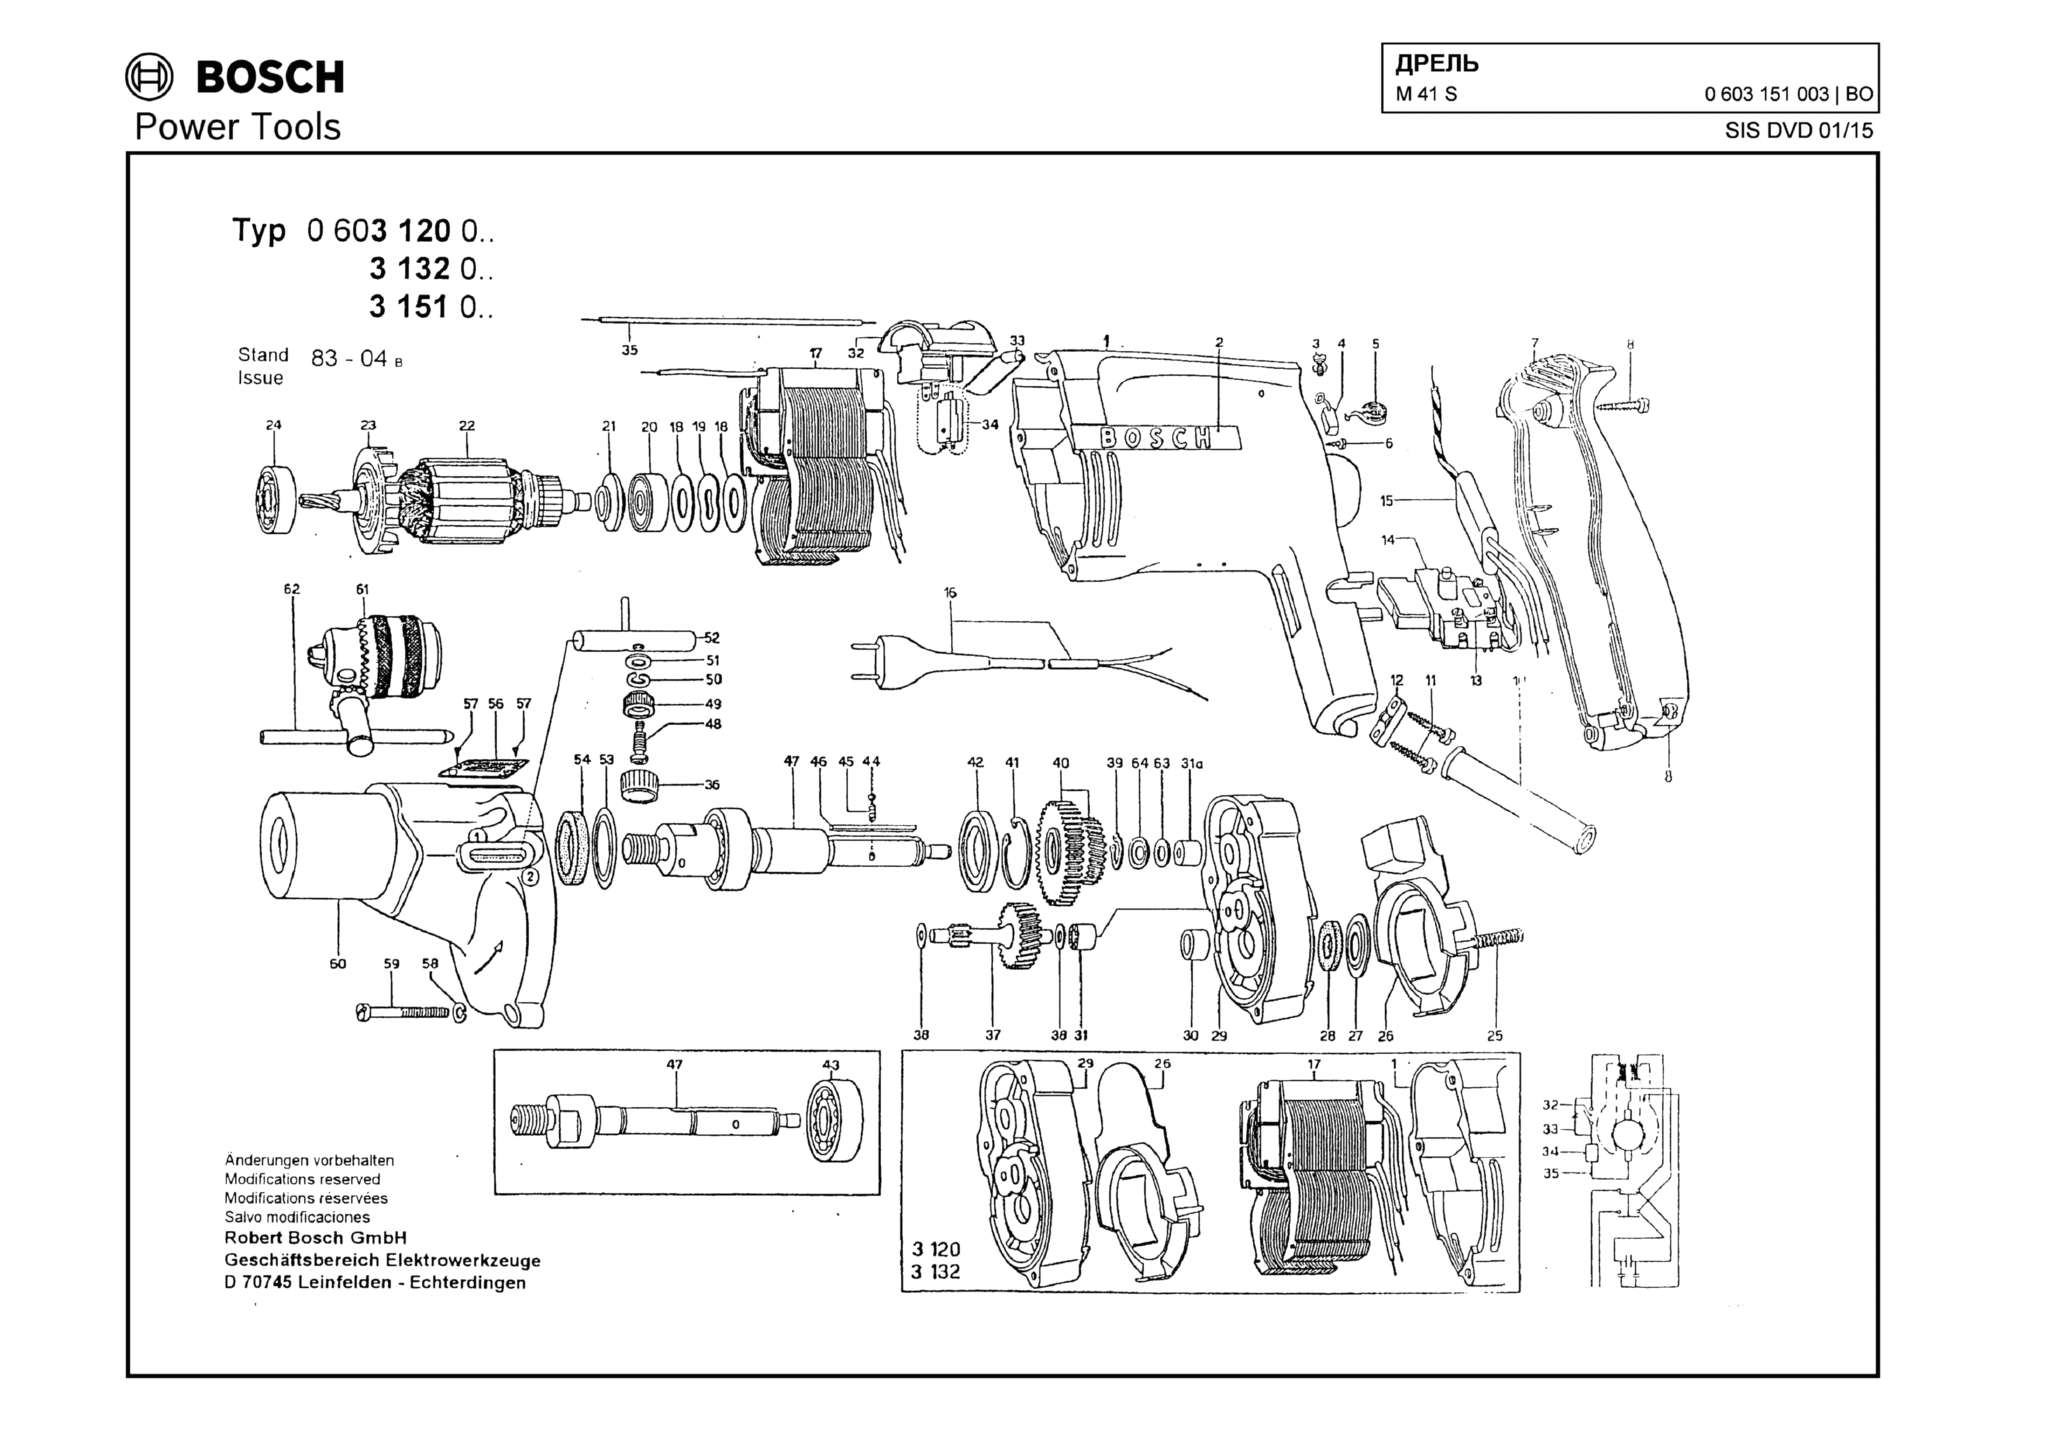 Запчасти, схема и деталировка Bosch M 41 S (ТИП 0603151003)